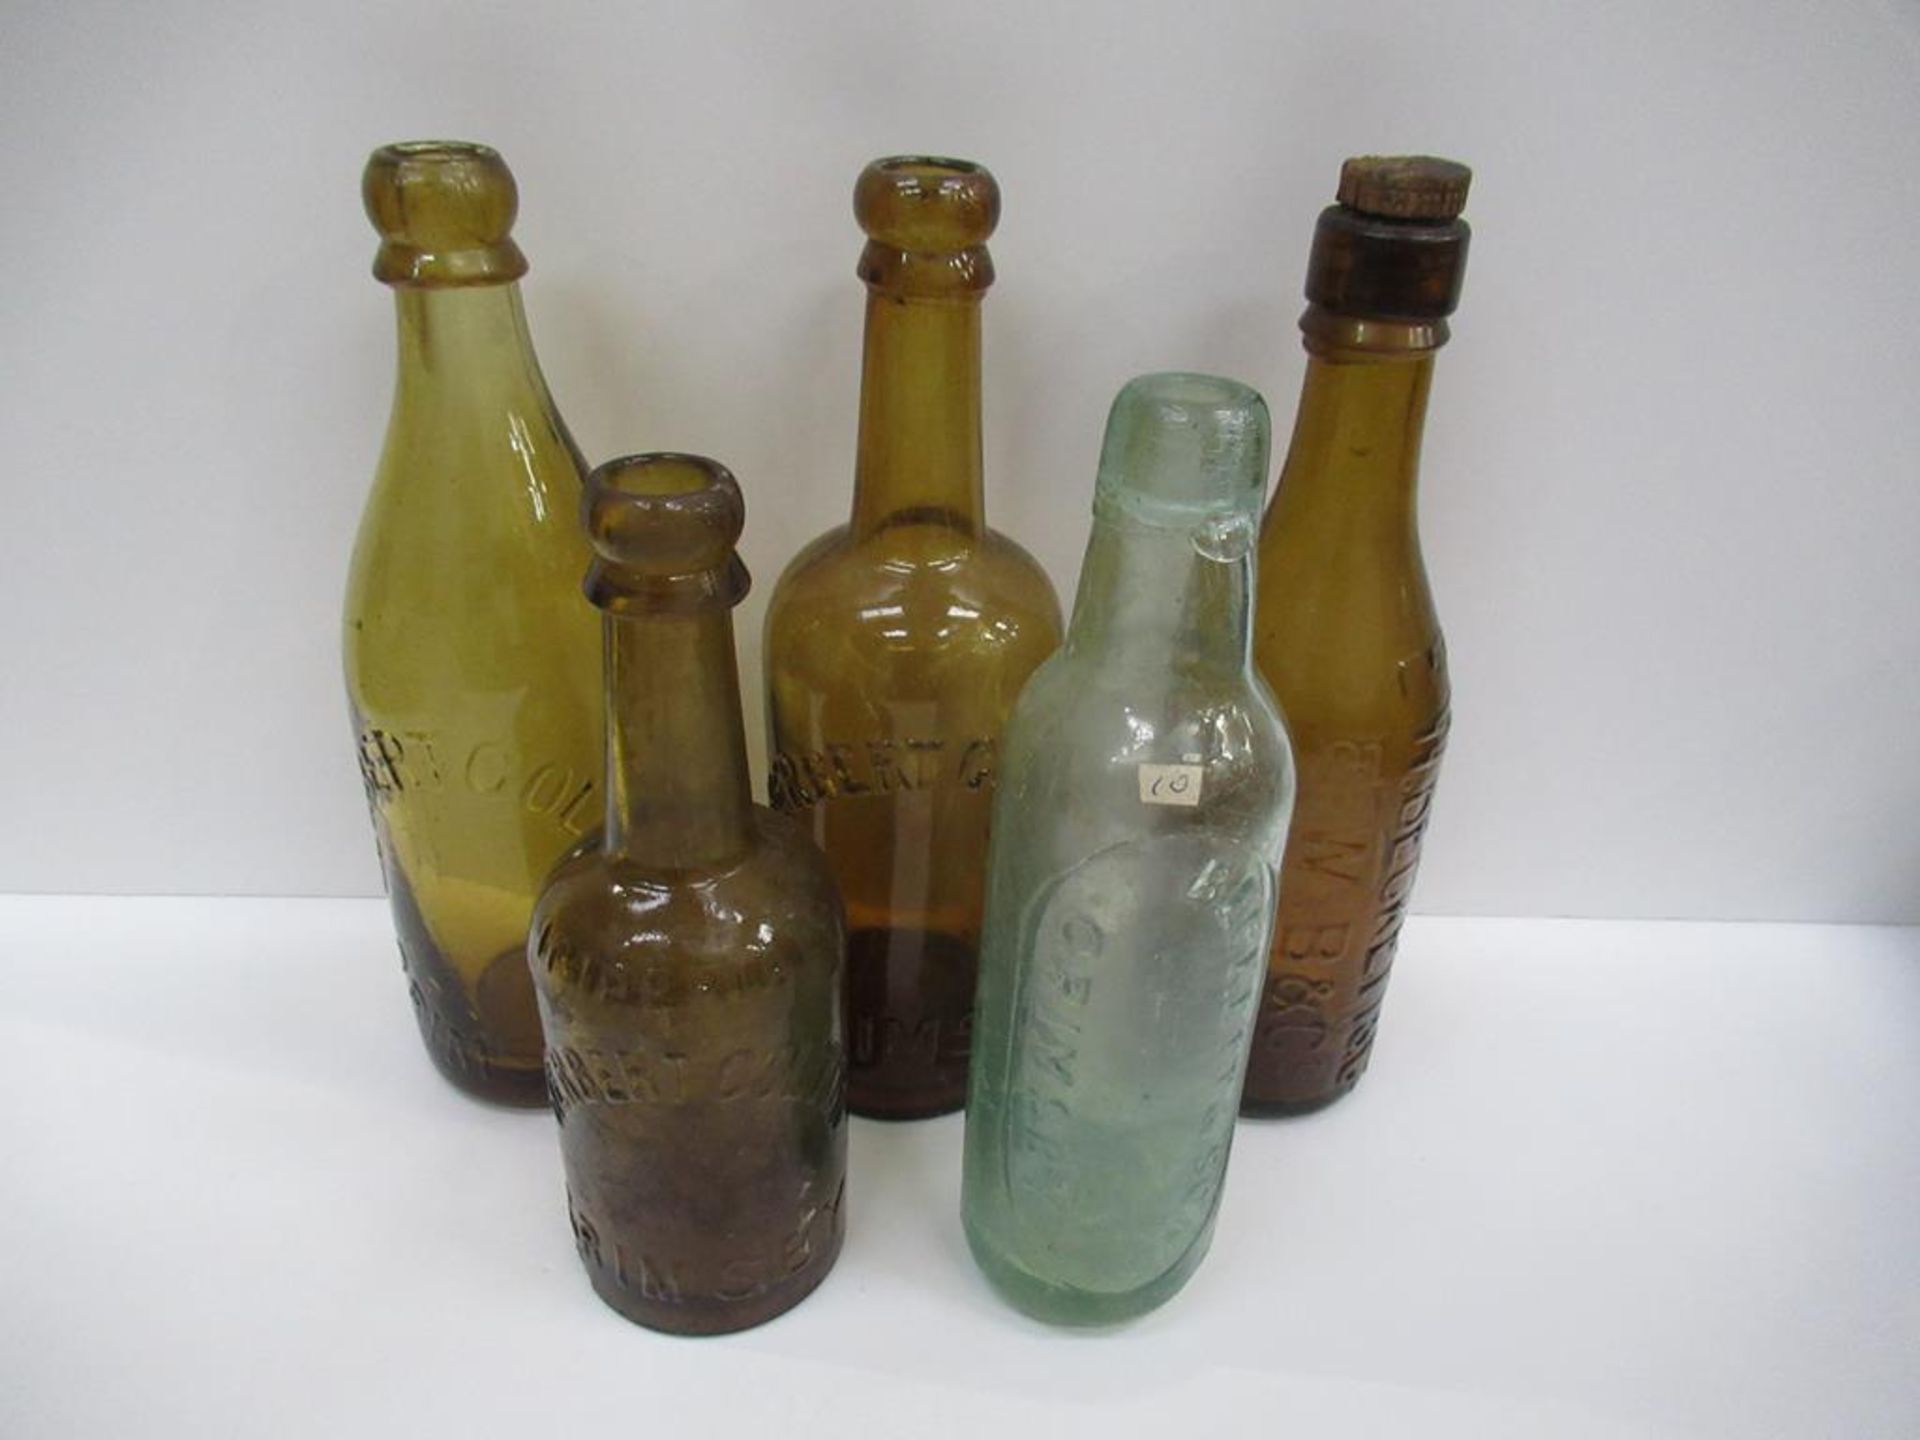 5x Grimsby Herbert Coulton (3) E.W Beckett & Co (1) and Beckett & Sons (1) bottles (4x coloured)